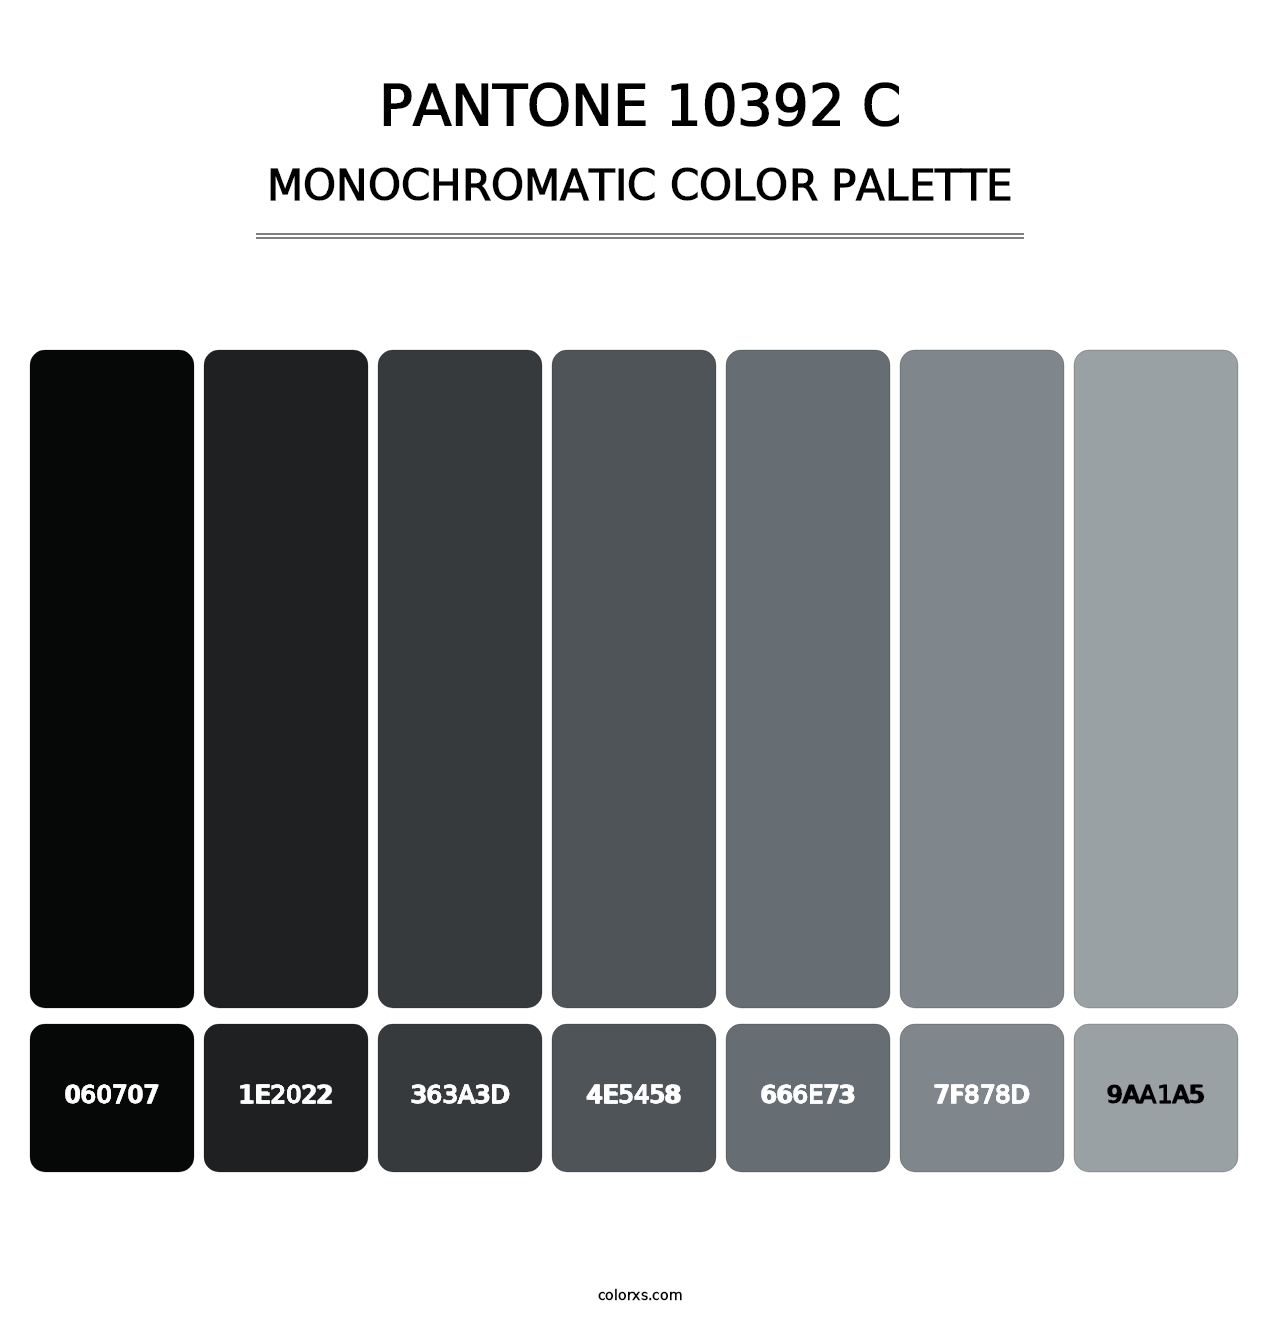 PANTONE 10392 C - Monochromatic Color Palette